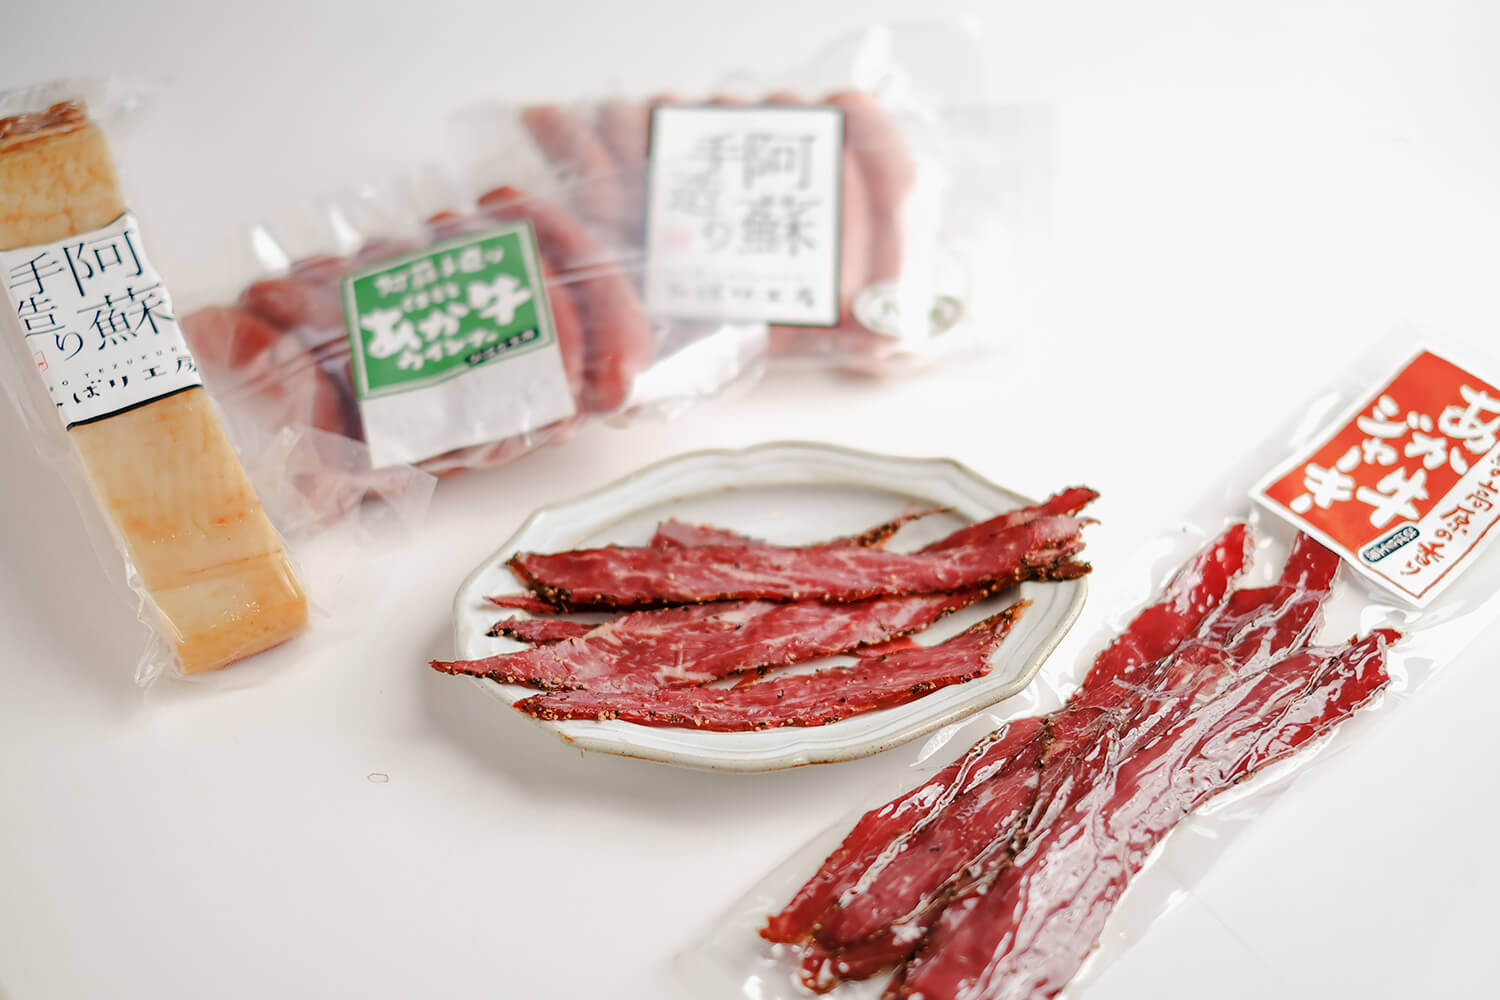 「あか牛ウインナー」や、厳選九州産豚肉によるベーコン・ウインナーなど、昔ながらの手作りで作られる阿蘇の定番土産